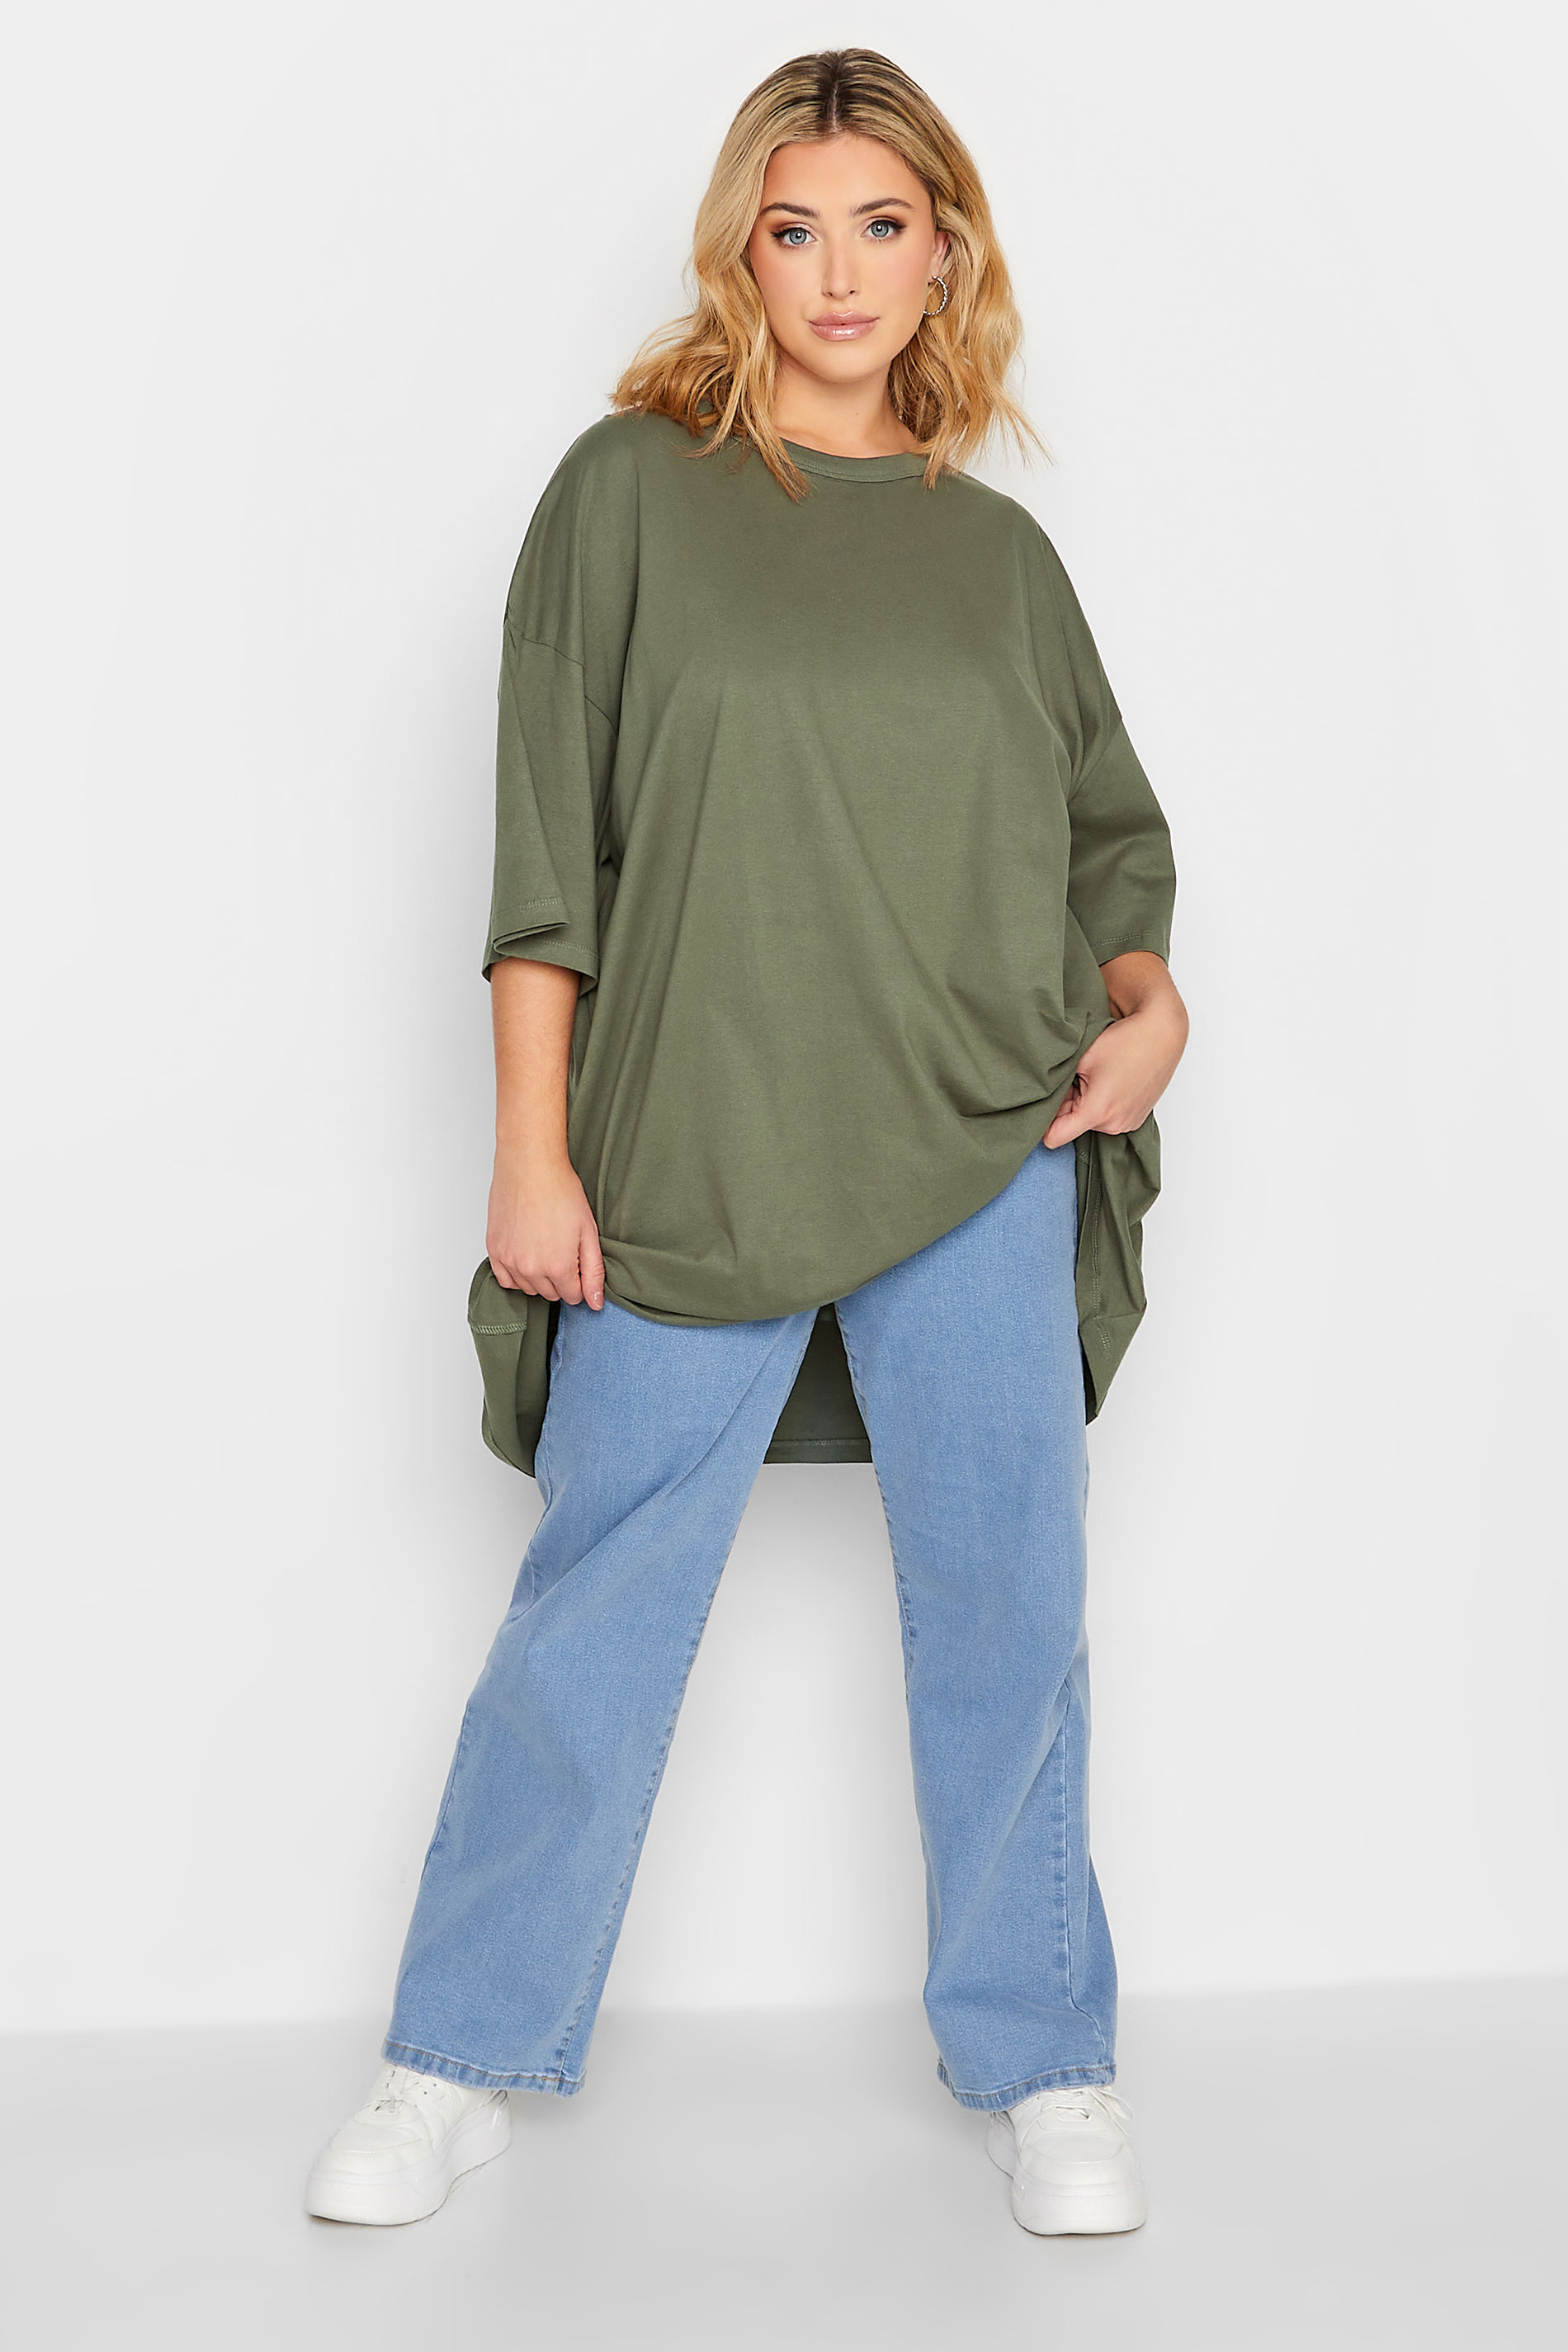 Plus-Size Khaki Green Oversized Tunic T-Shirt | Yours Clothing 2